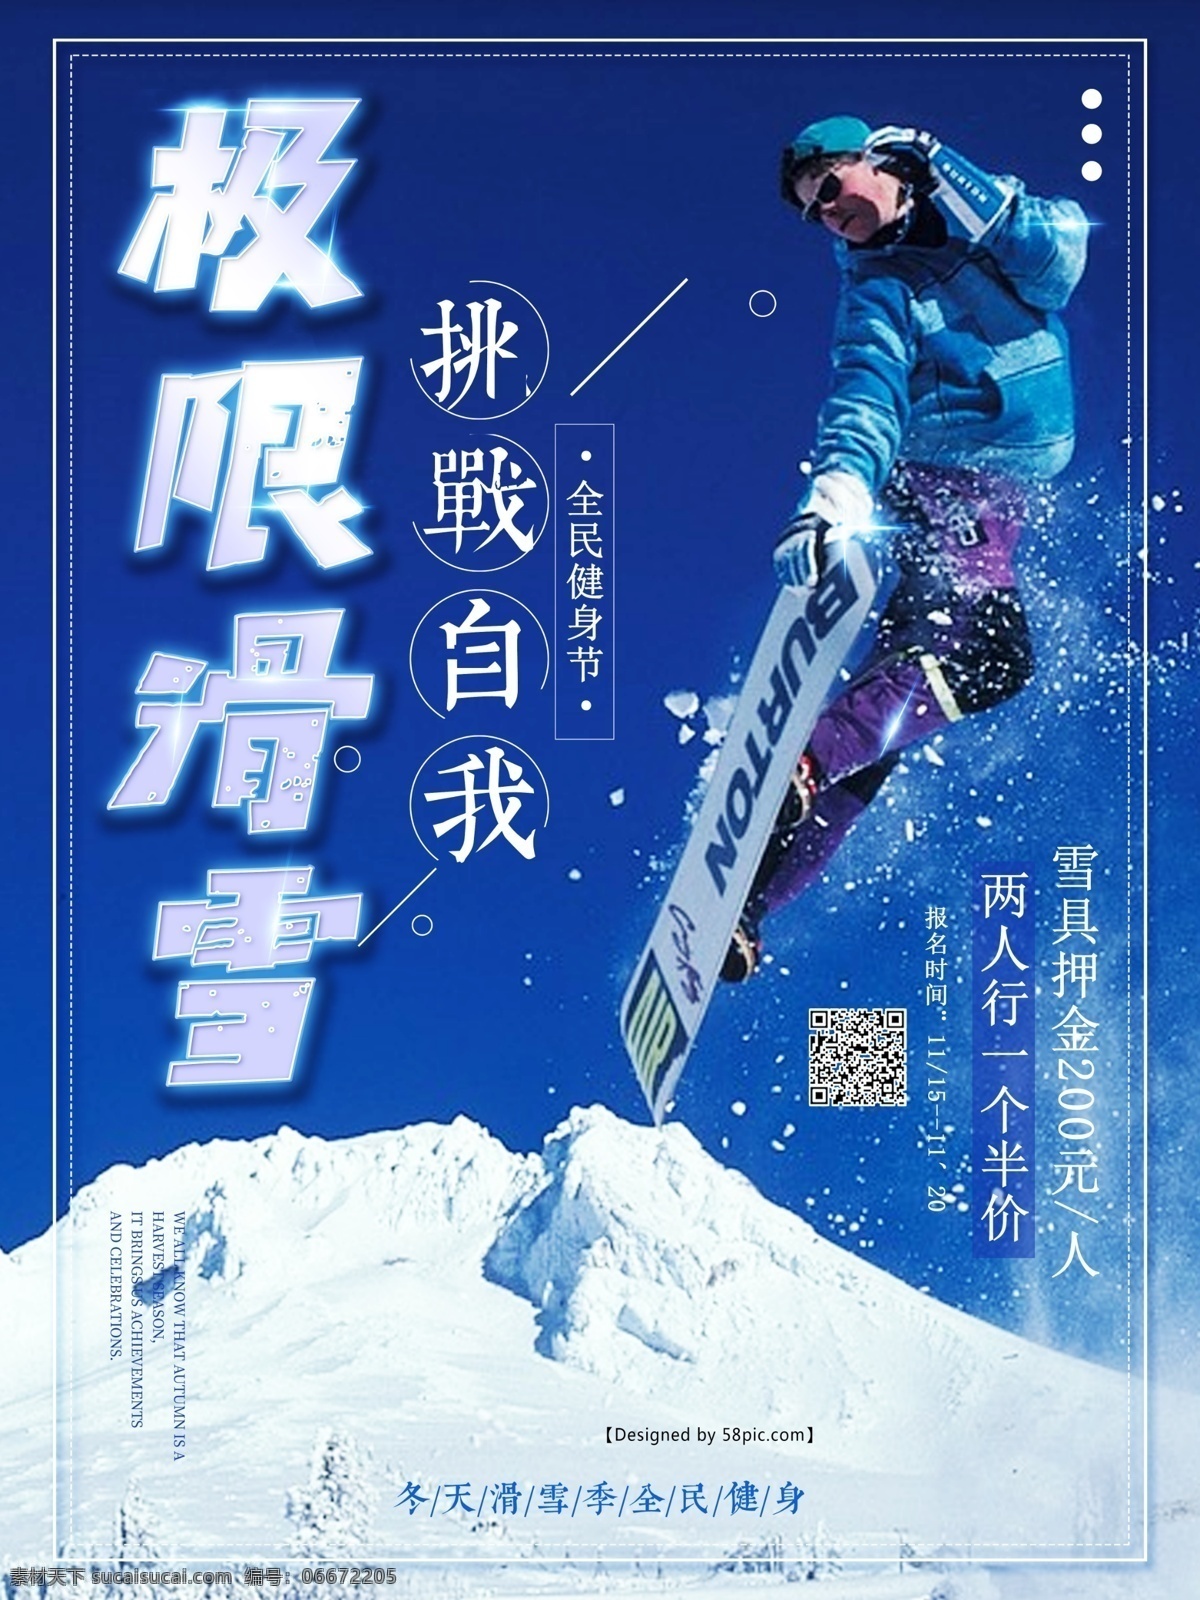 极限 滑雪 宣传海报 极限滑雪 滑雪海报 冰雪节 挑战自我 滑雪挑战 极限挑战海报 滑雪体育 滑雪宣传海报